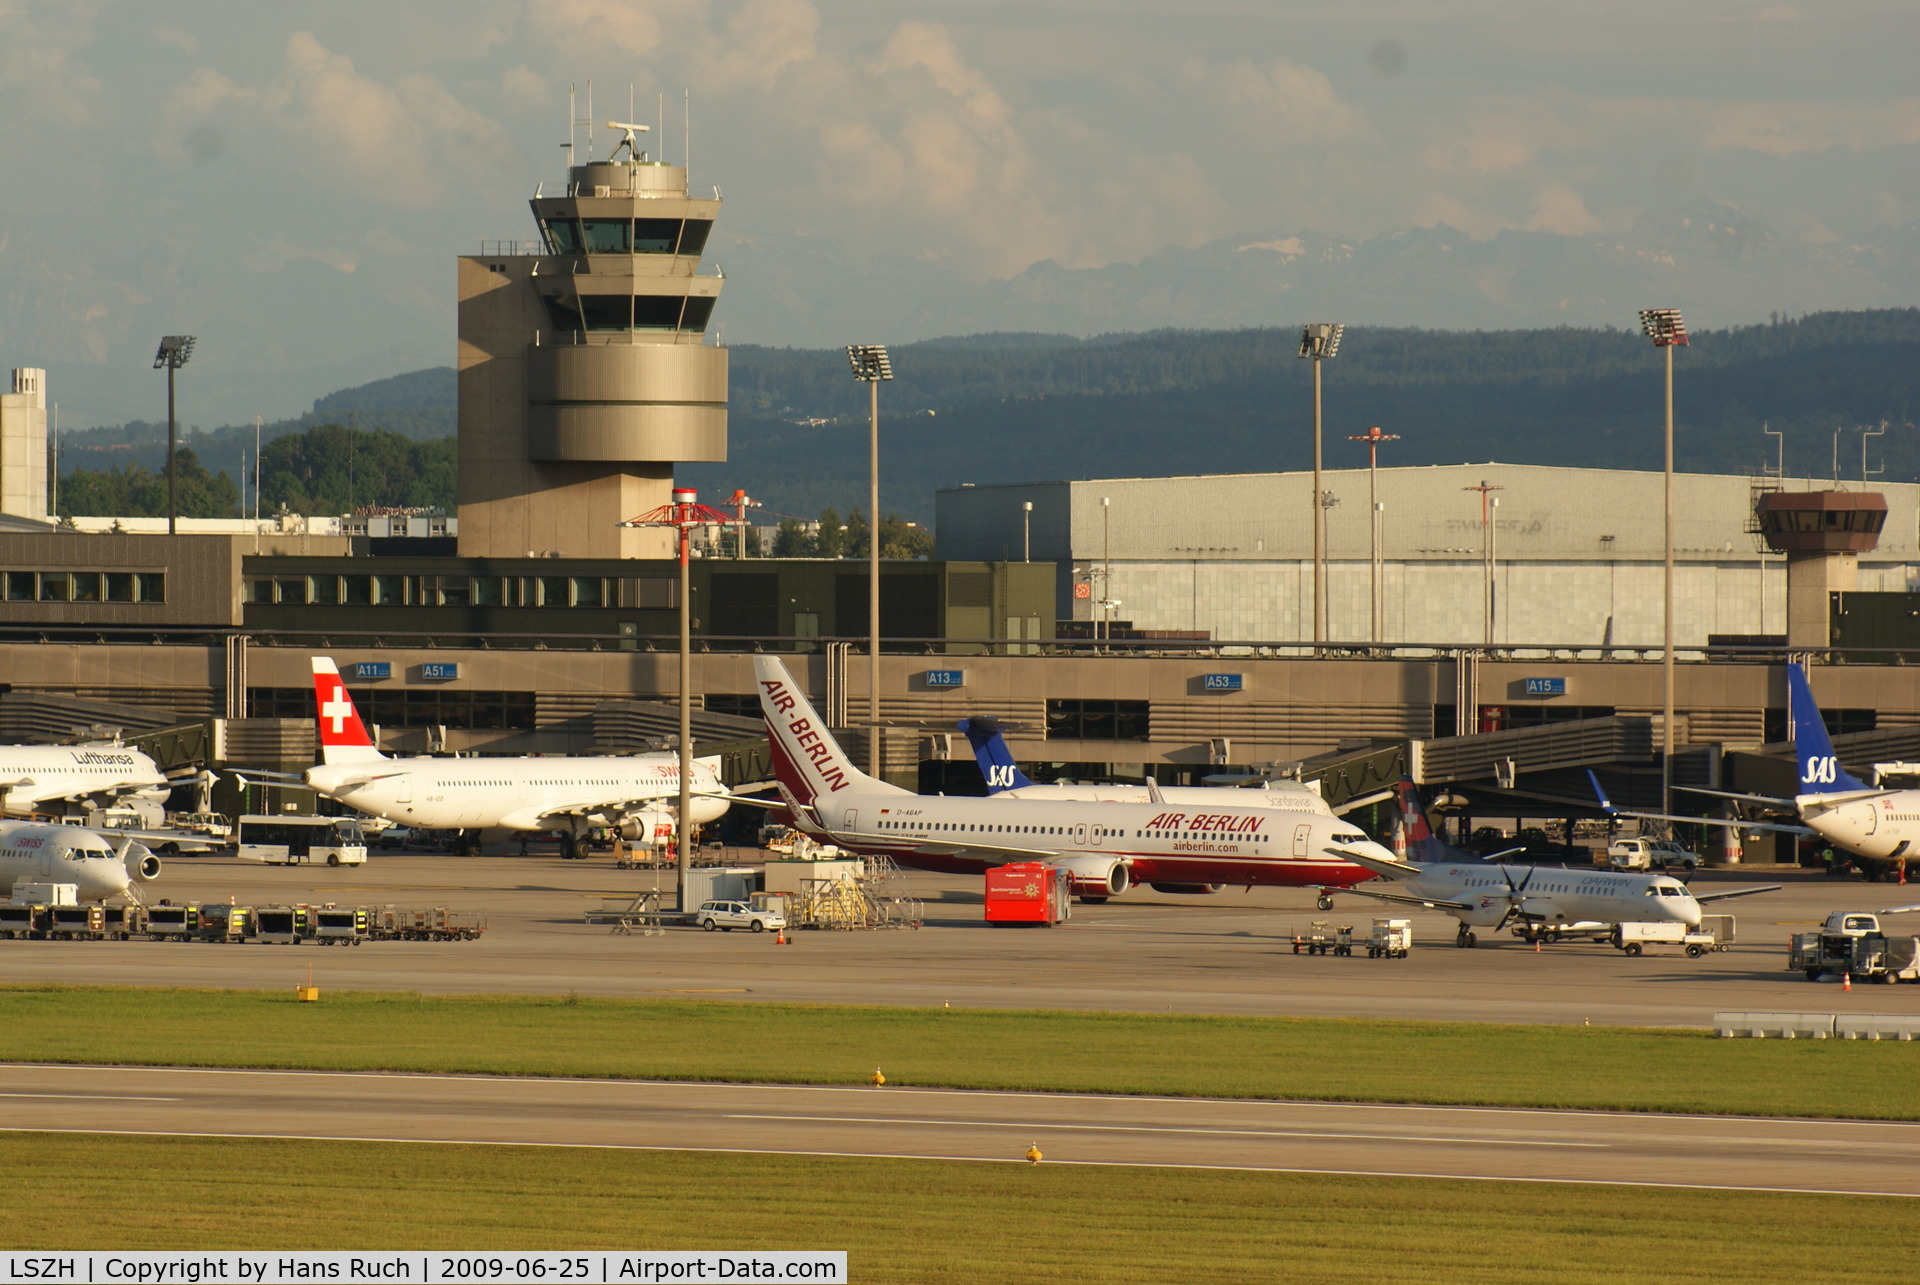 Zurich International Airport, Zurich Switzerland (LSZH) - E-Dock